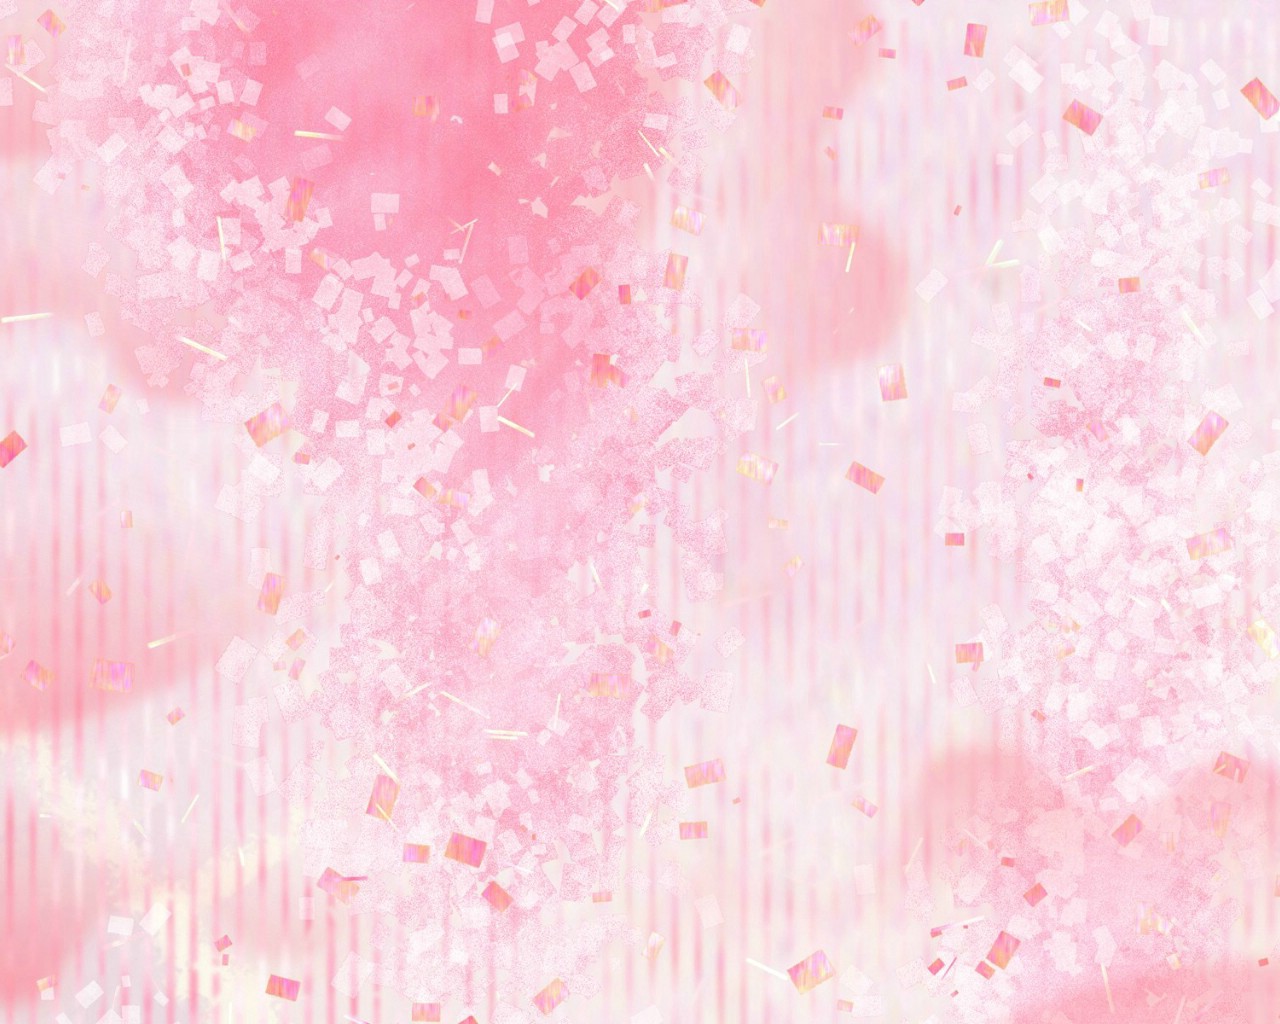 壁纸1280x1024 甜美系 碎花花卉图案设计壁纸 美丽碎花布 之 粉红甜美系壁纸 美丽碎花布 之 粉红甜美系图片 美丽碎花布 之 粉红甜美系素材 花卉壁纸 花卉图库 花卉图片素材桌面壁纸